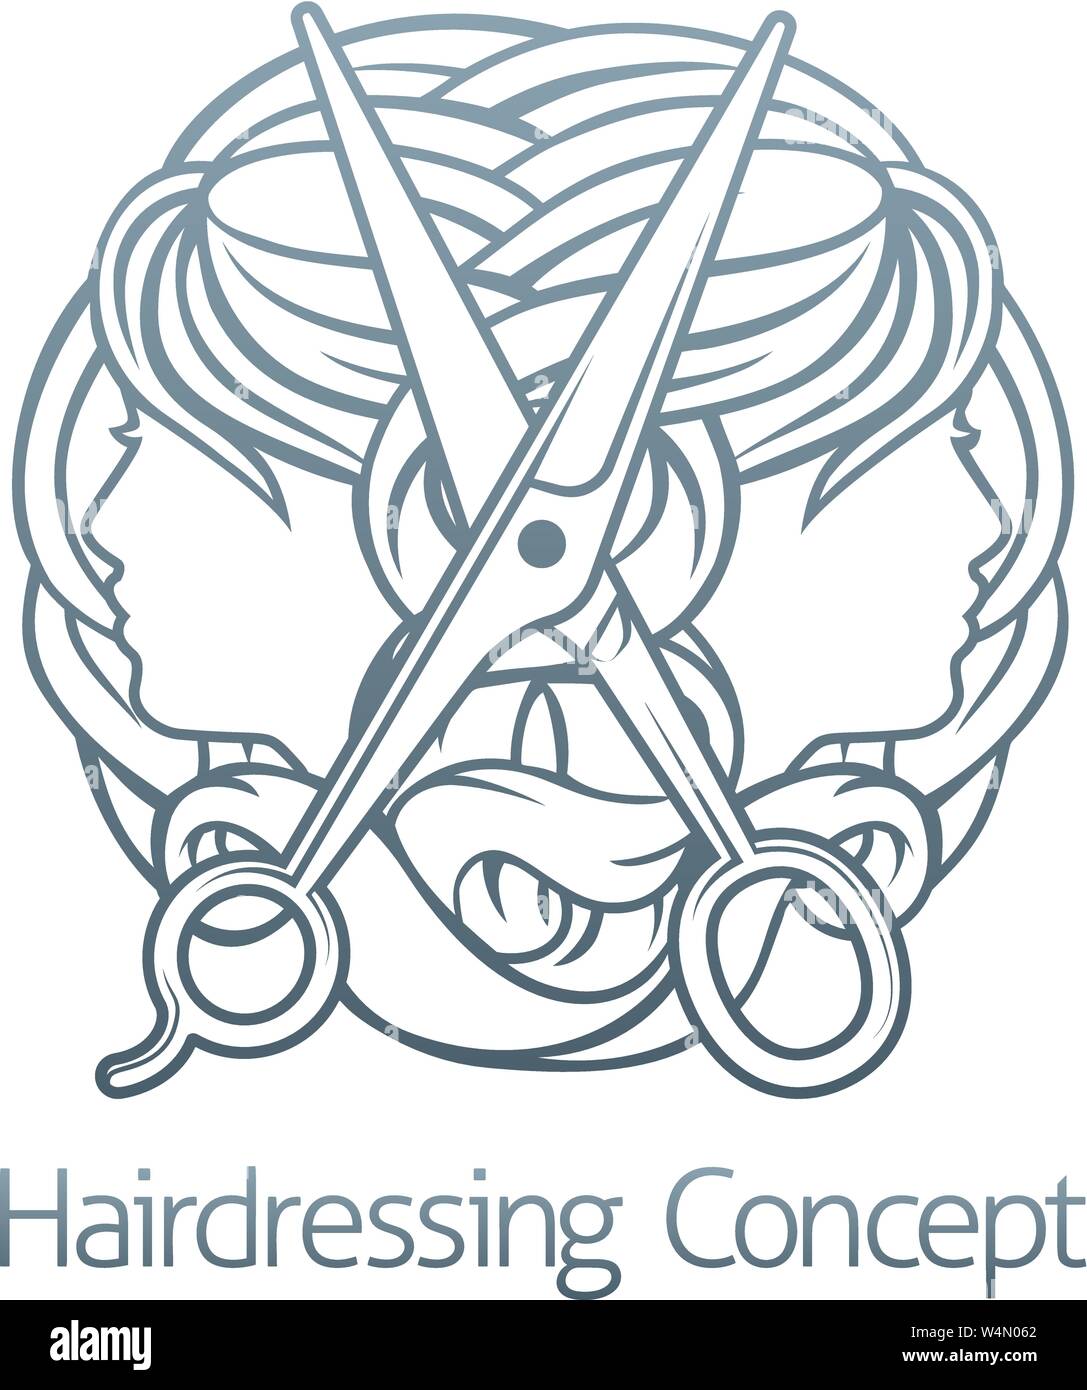 Hairdresser Stylist Hair Salon Concept Stock Vector